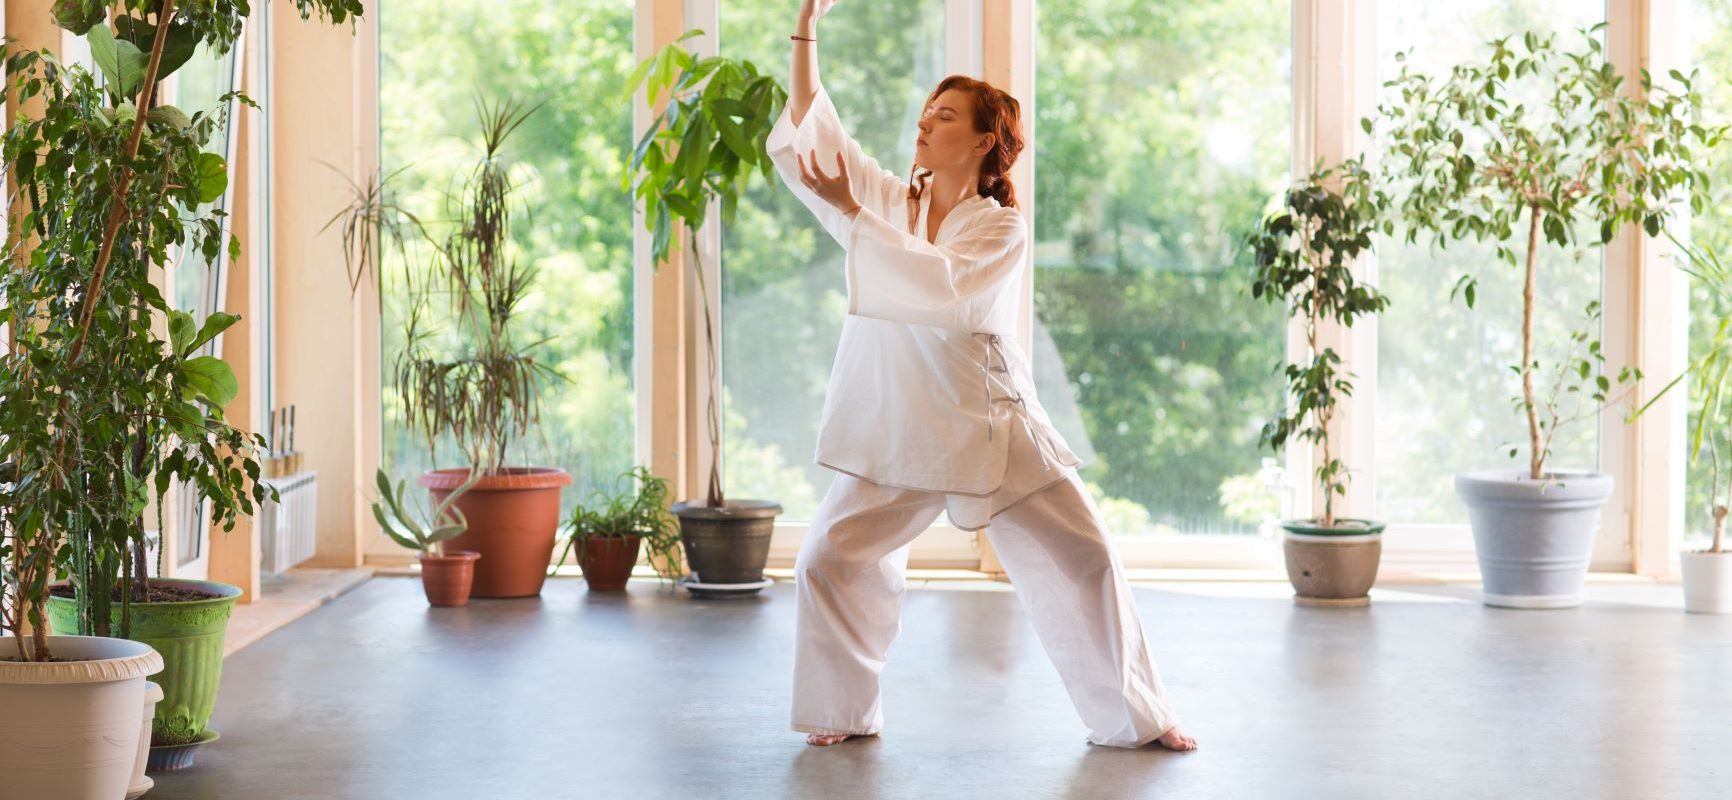 Tai chi - medytacja w ruchu. Kobieta praktykuje tai chi w domu w otoczeniu roślin.